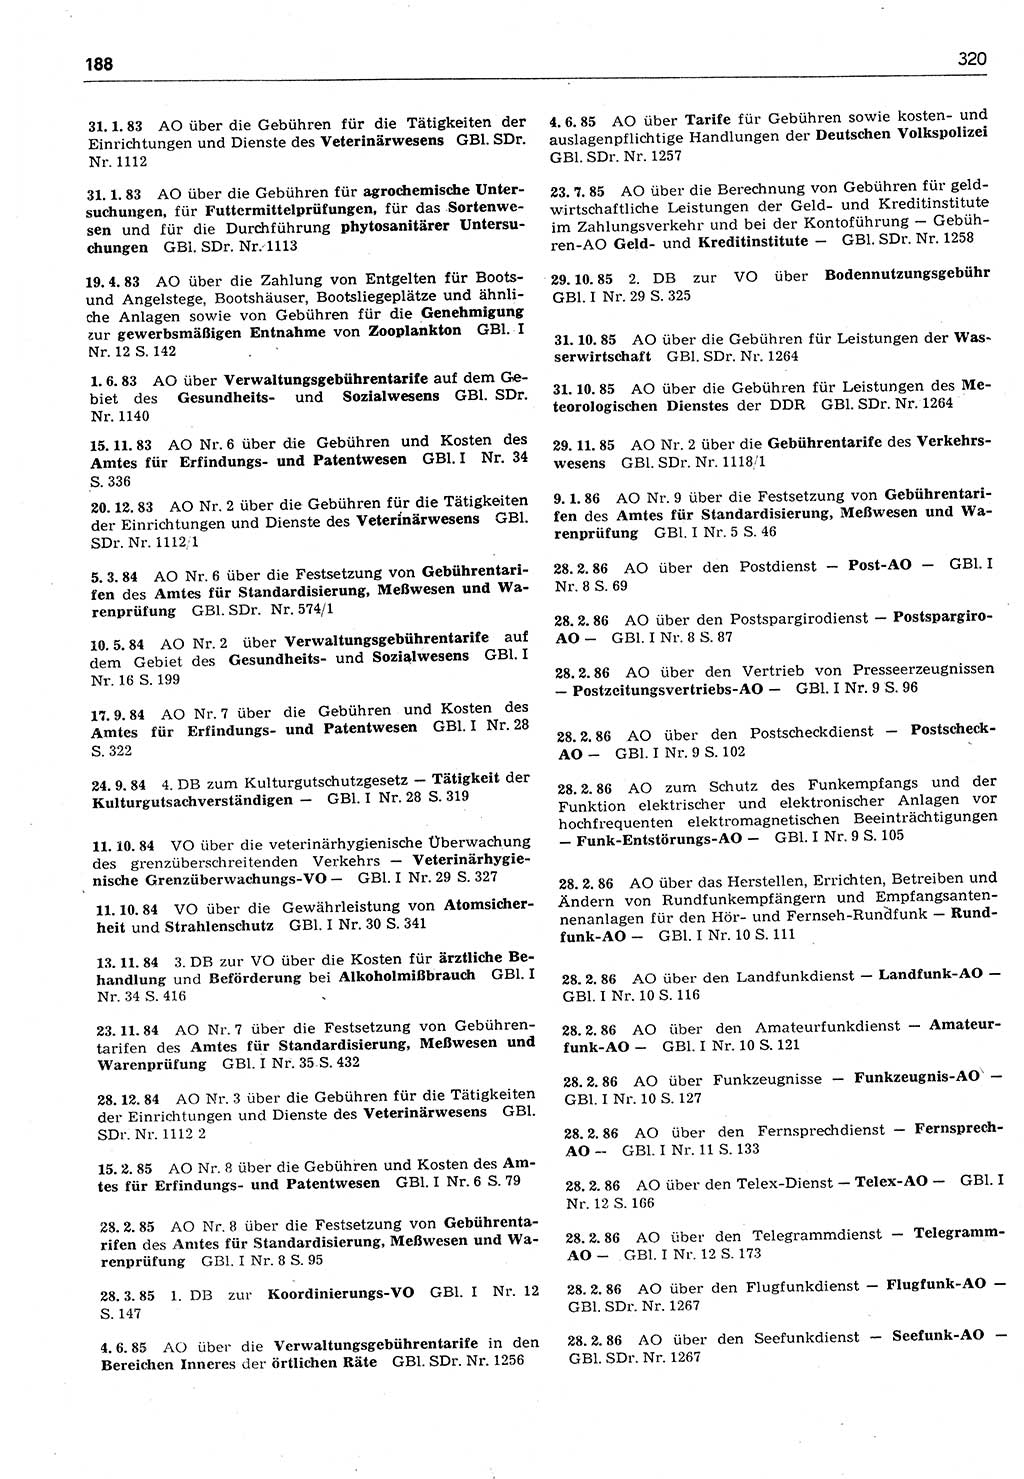 Das geltende Recht der Deutschen Demokratischen Republik (DDR) 1949-1988, Seite 320 (Gelt. R. DDR 1949-1988, S. 320)